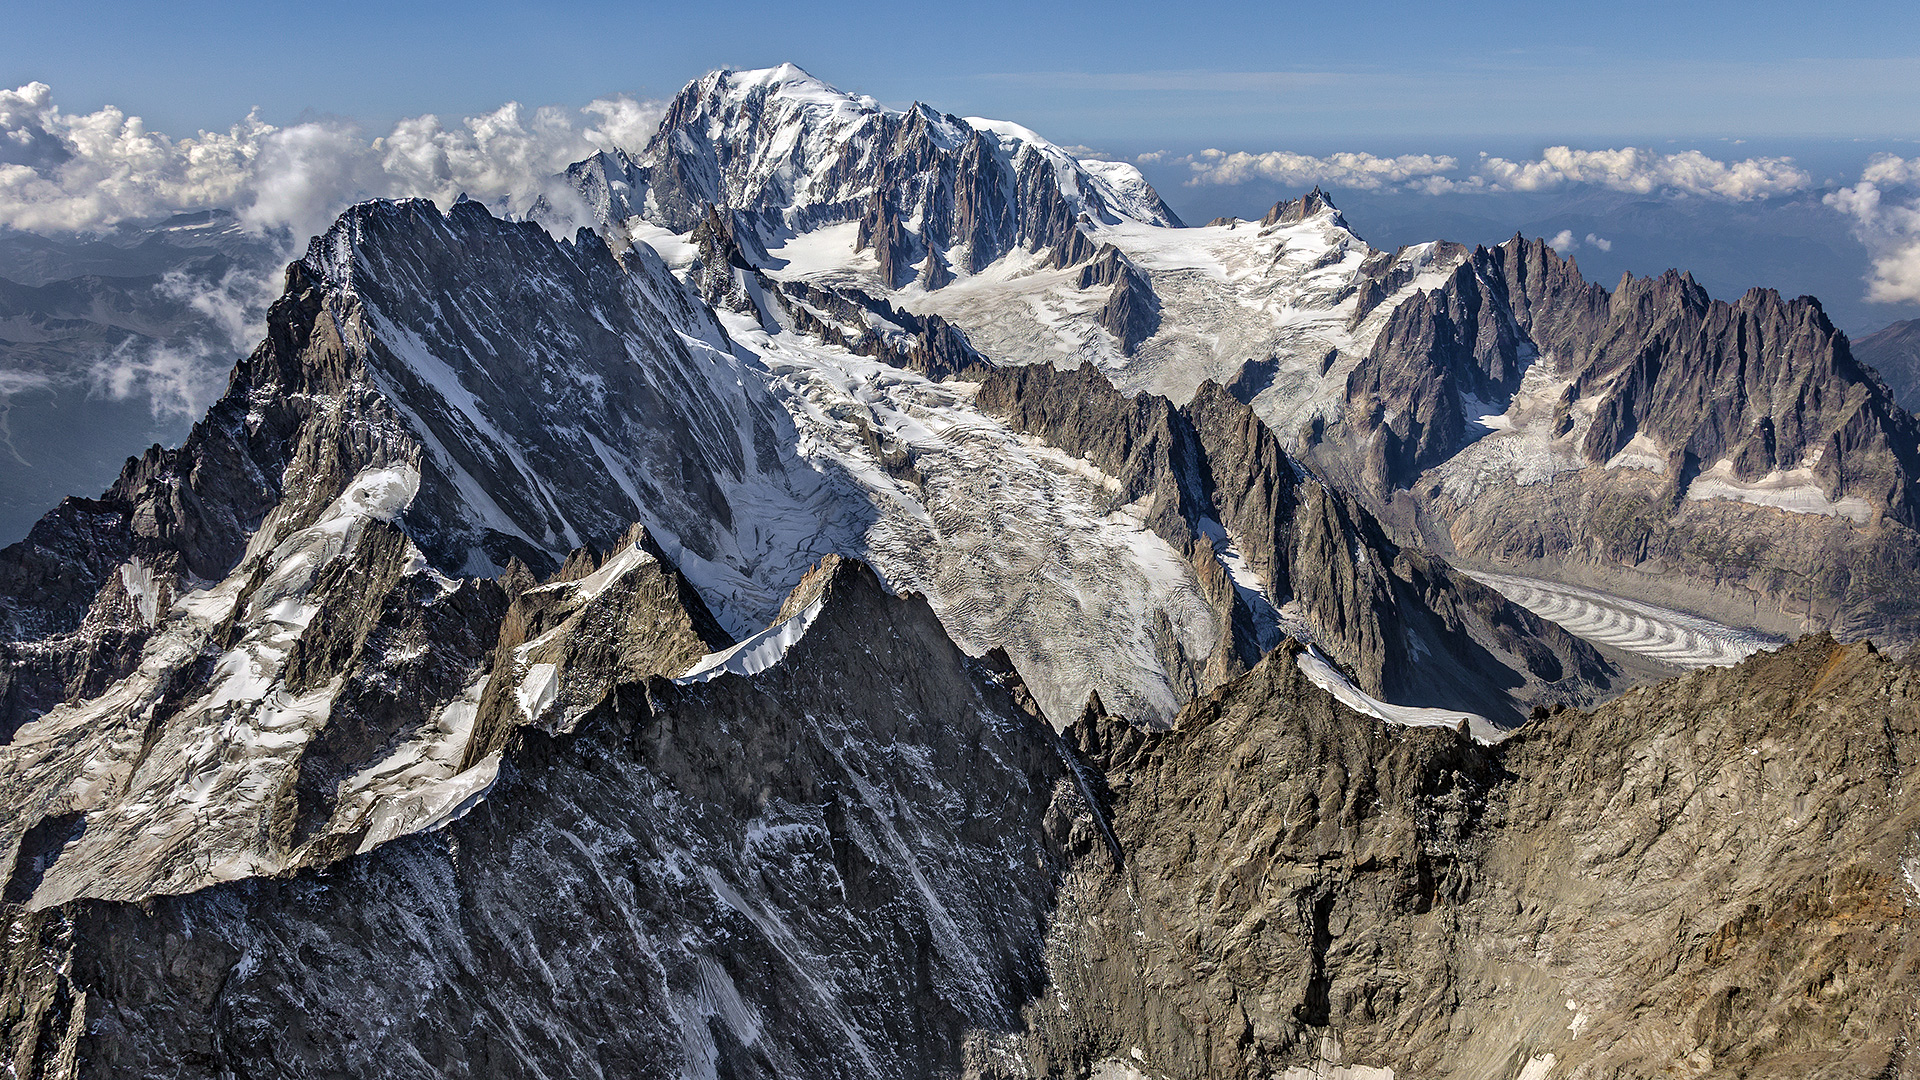 Paradeblick auf die Grand Jorasse Nordwand und den Mont Blanc.